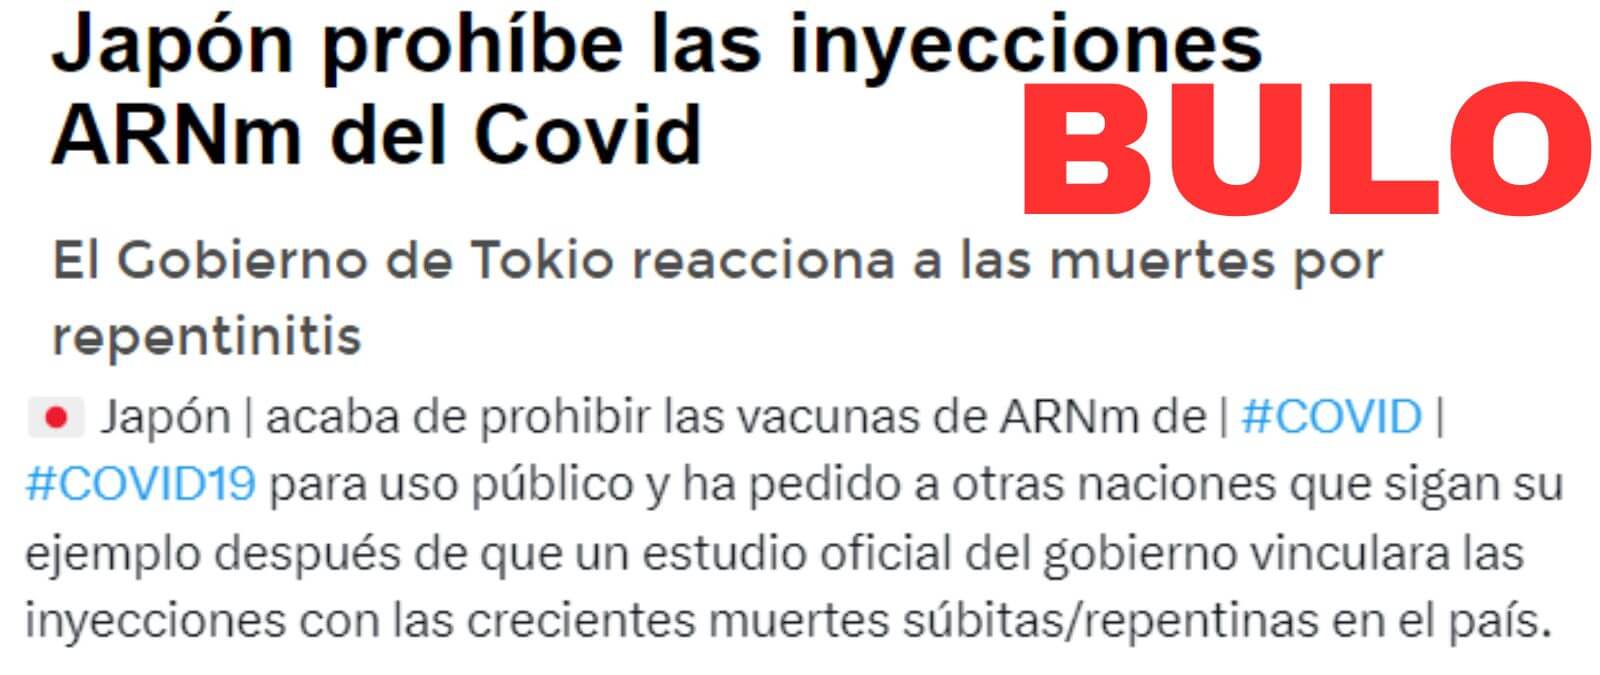 No, Japón no ha prohibido las vacunas de ARNm contra la COVID-19